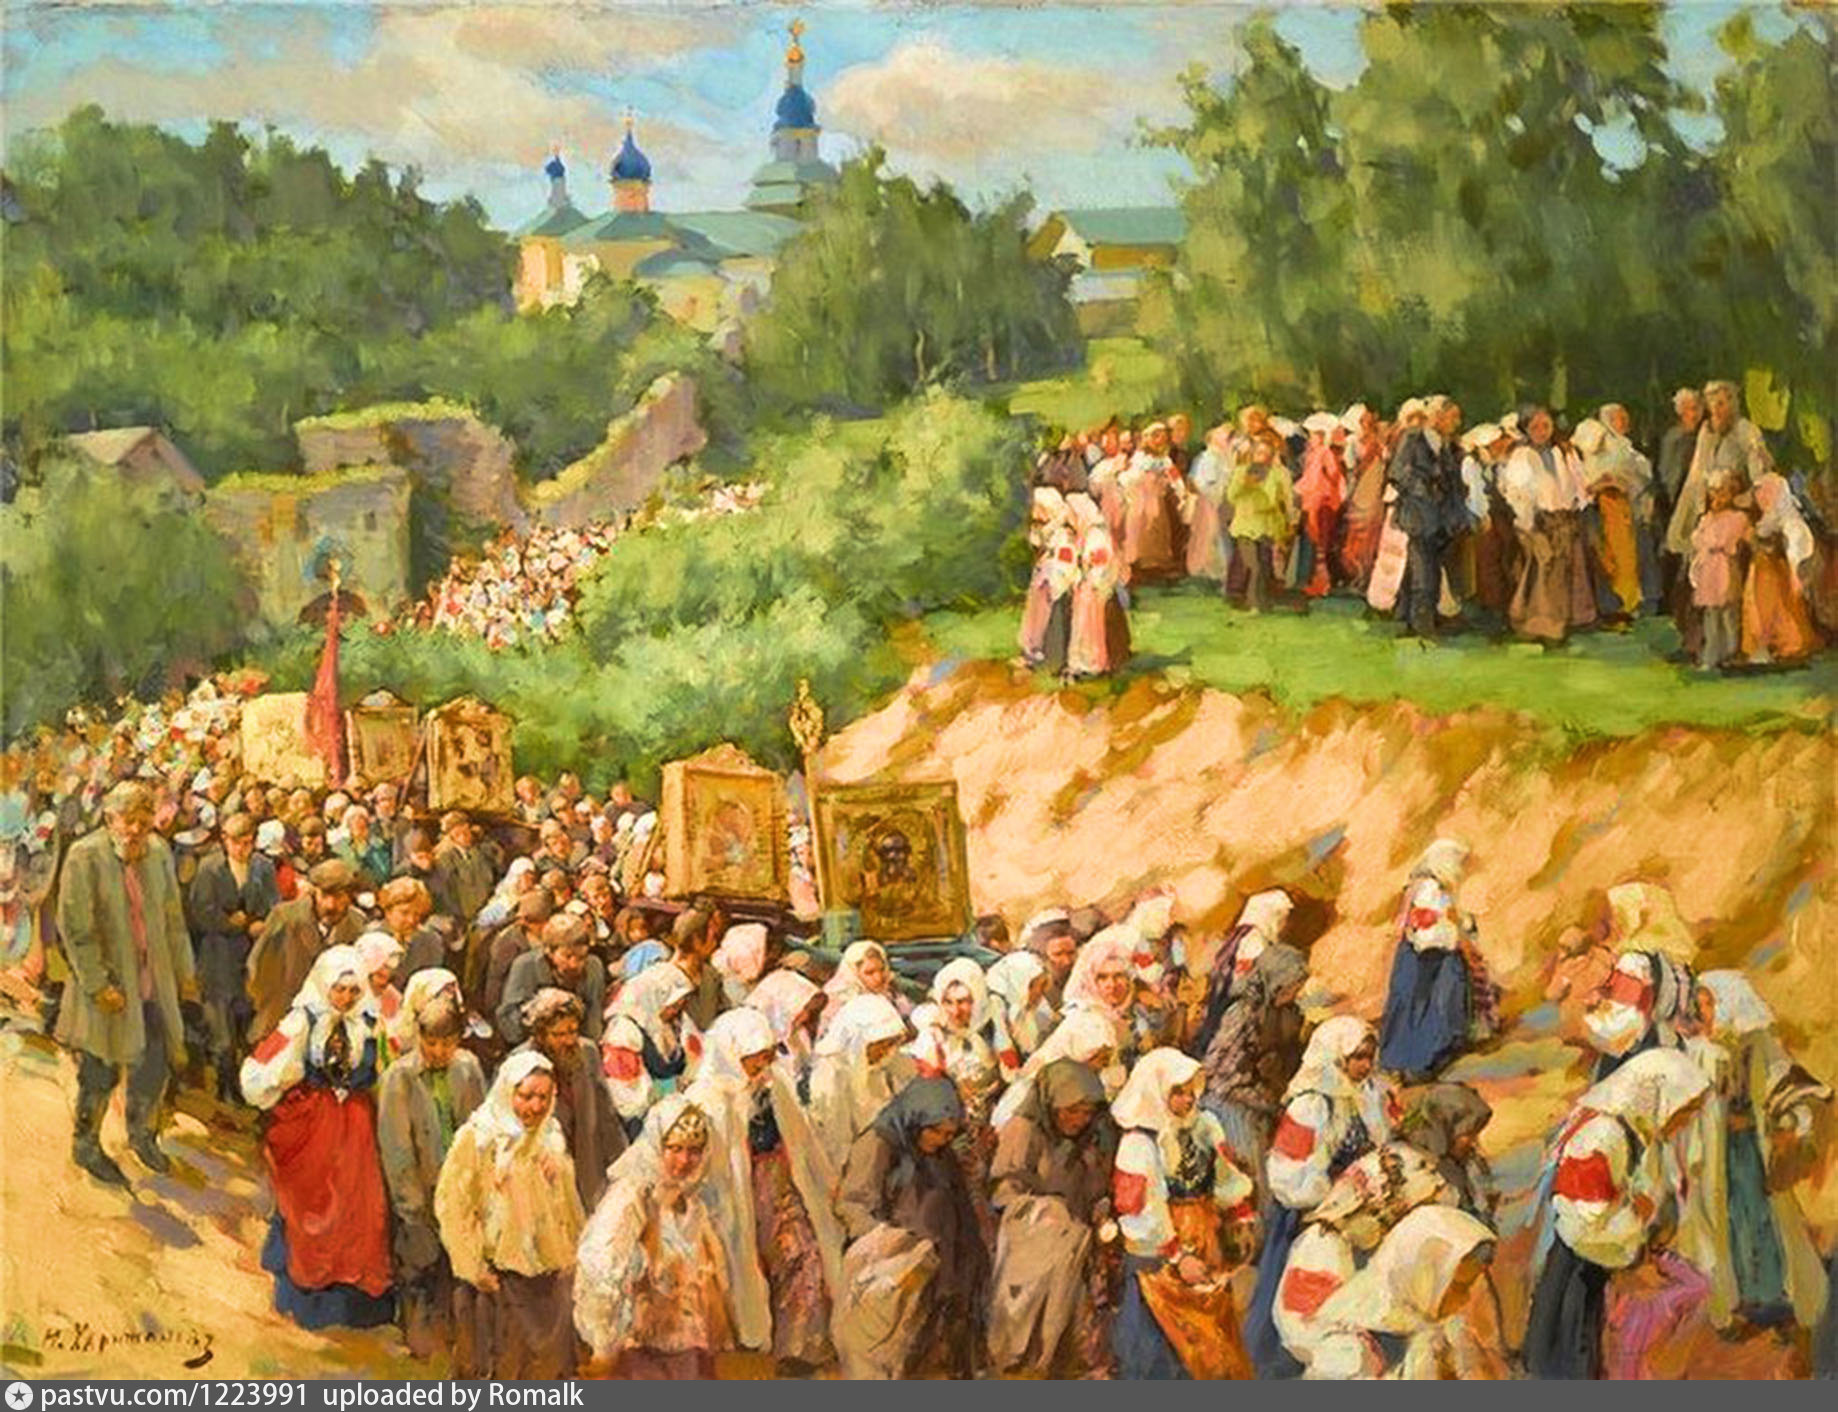 Православная церковь 18 века. Картина Васнецова крестный ход.